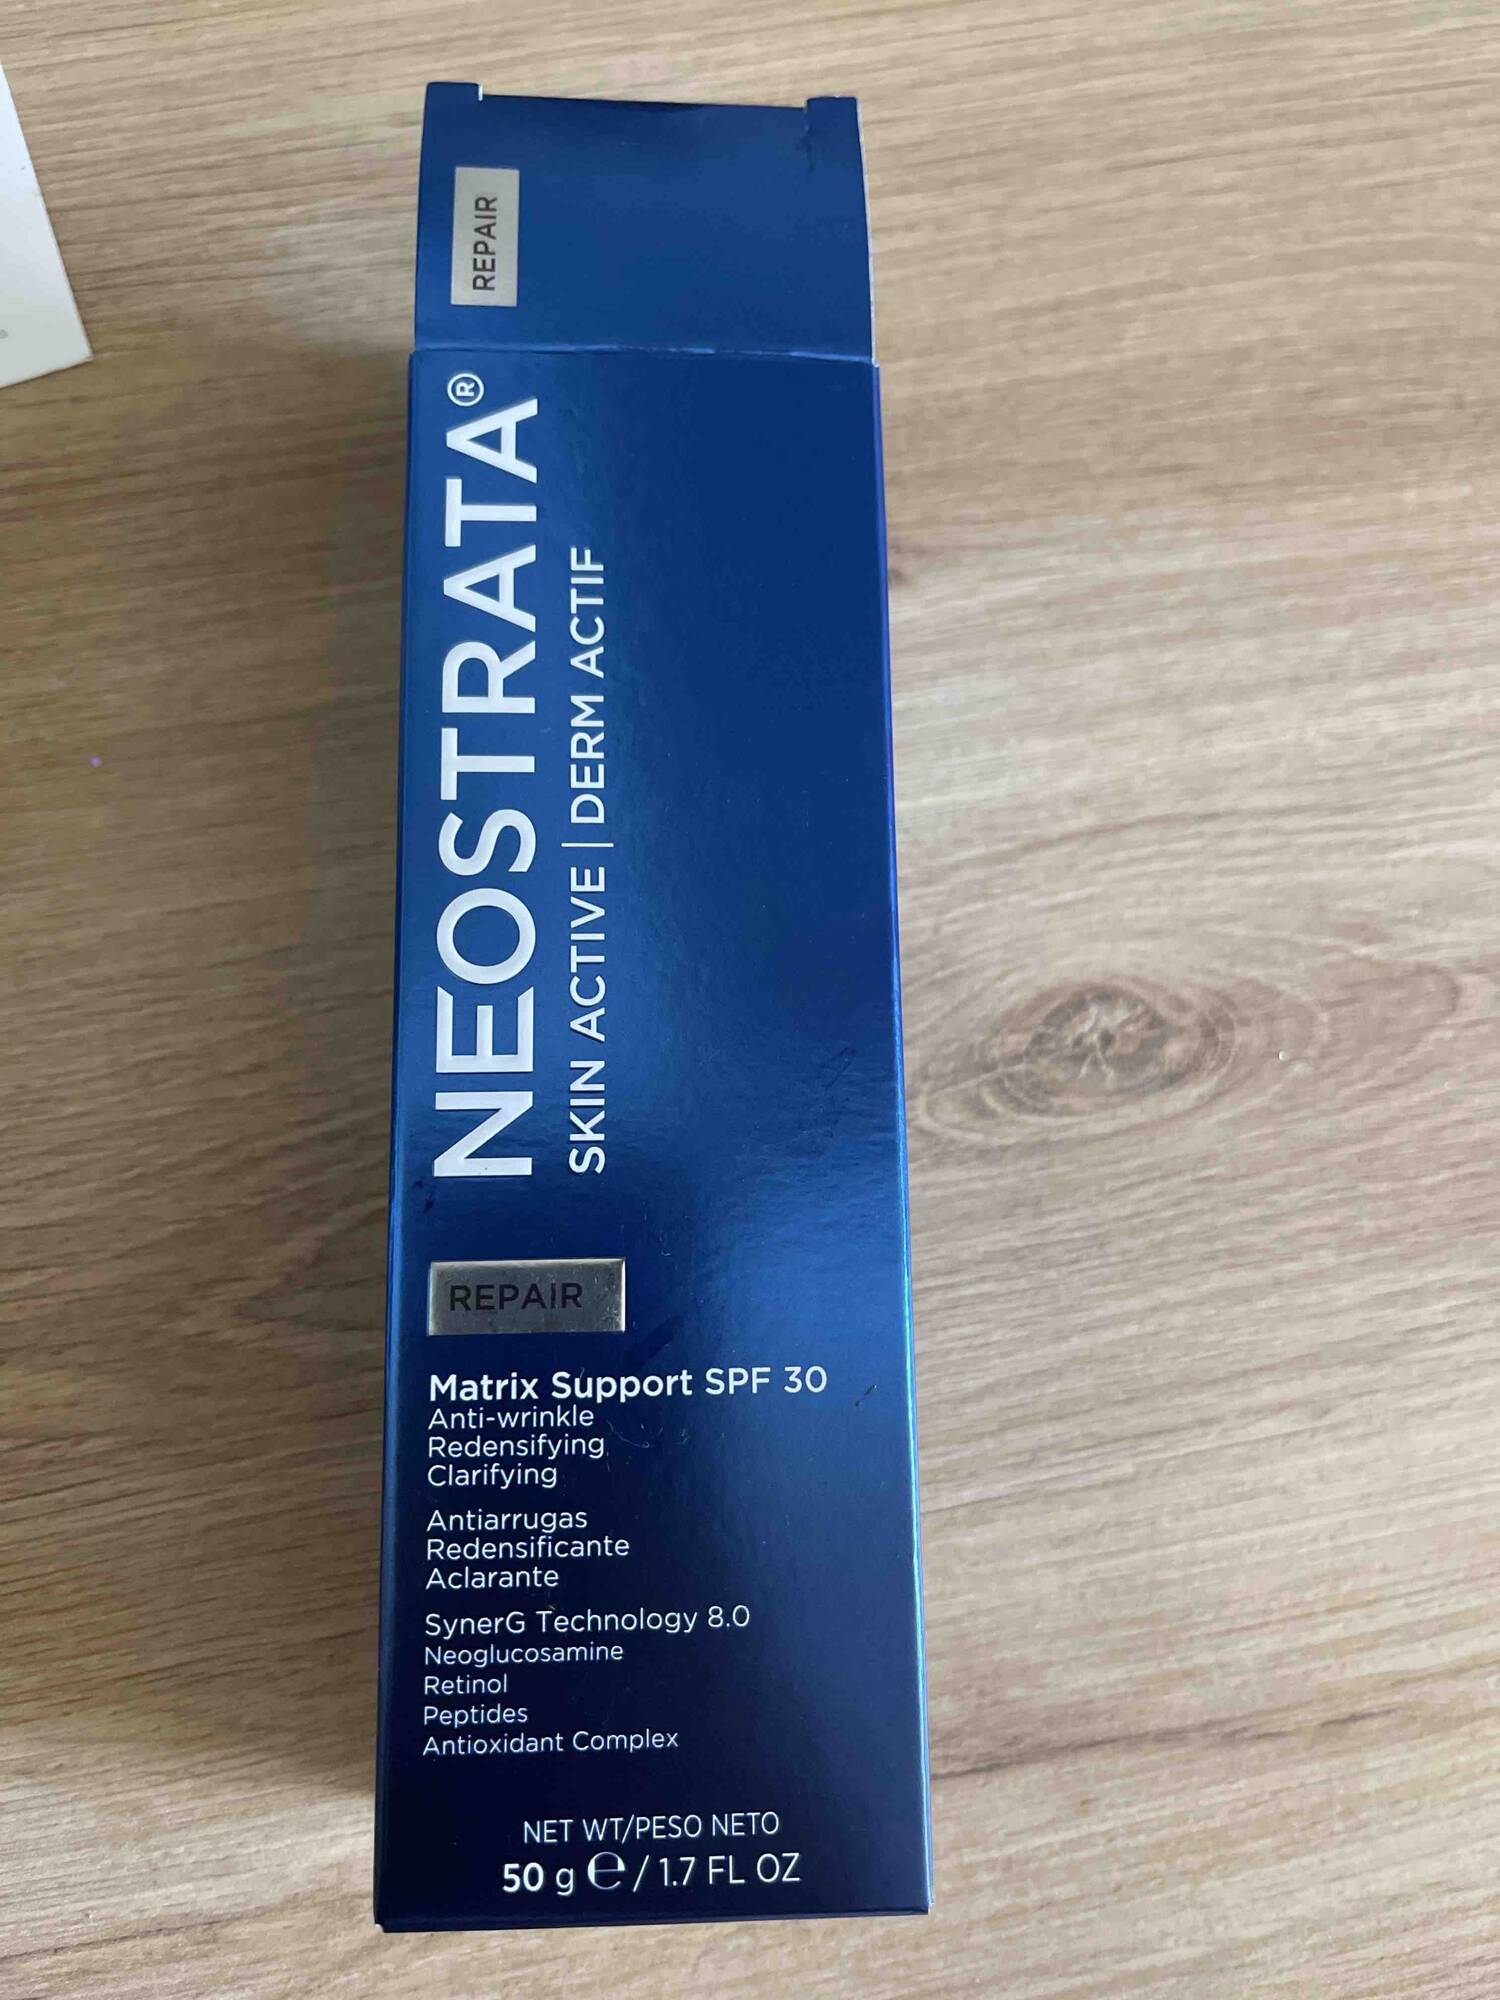 NEOSTRATA - Skin active_derm actif